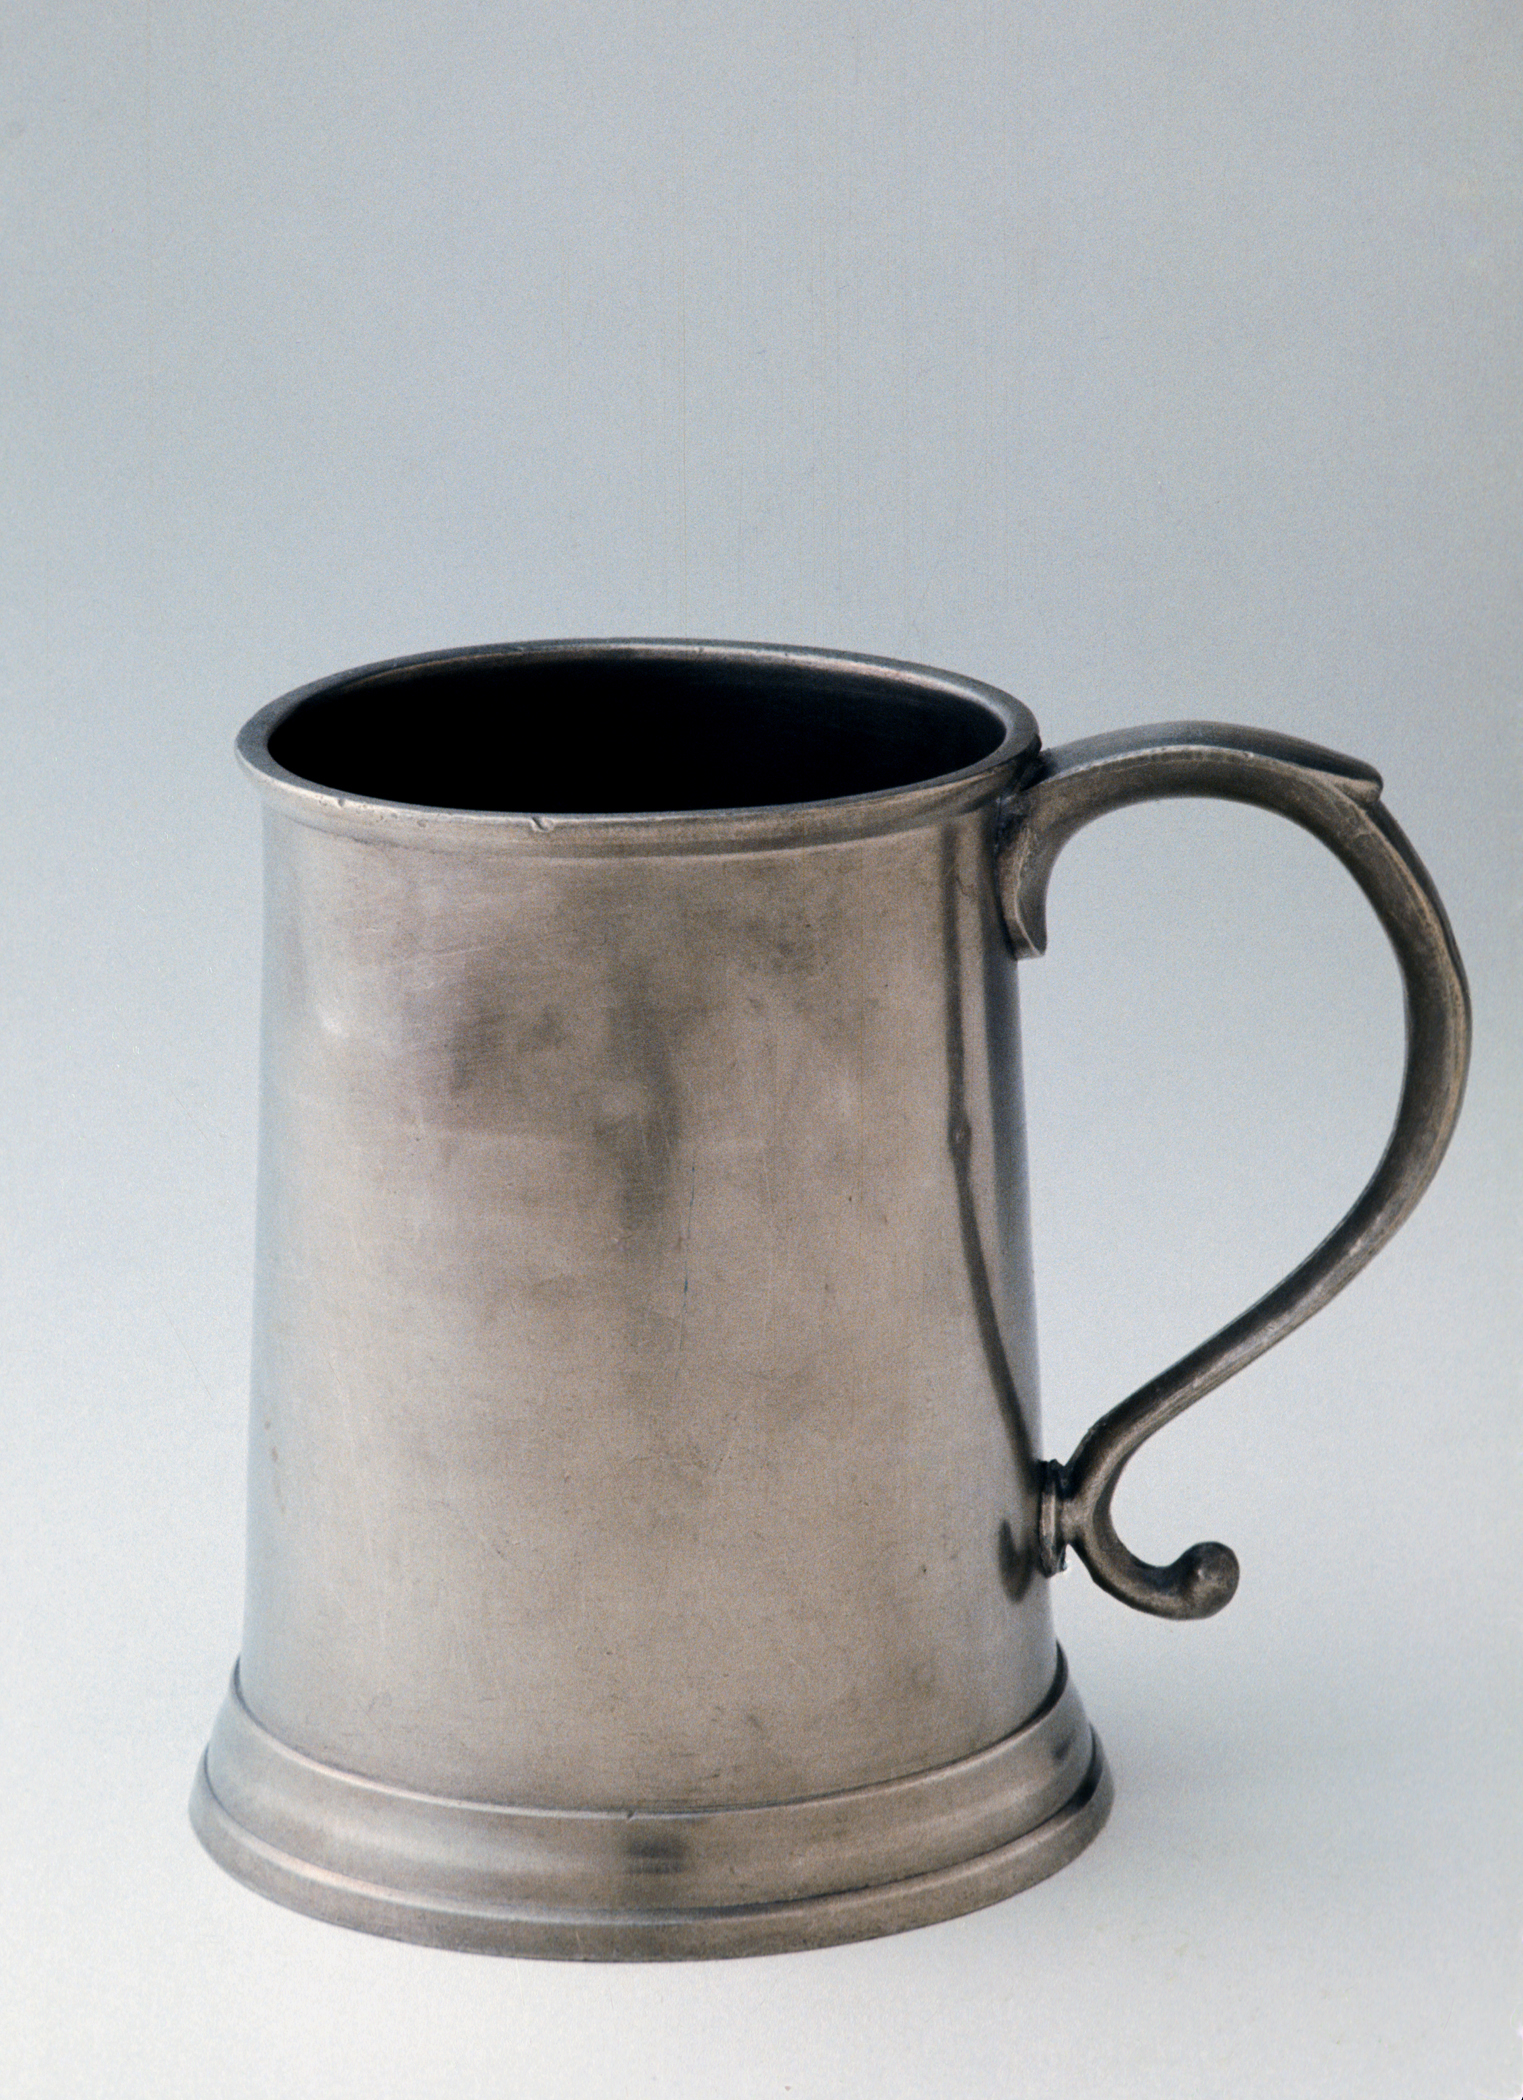 1956.0009.002 Pewter mug